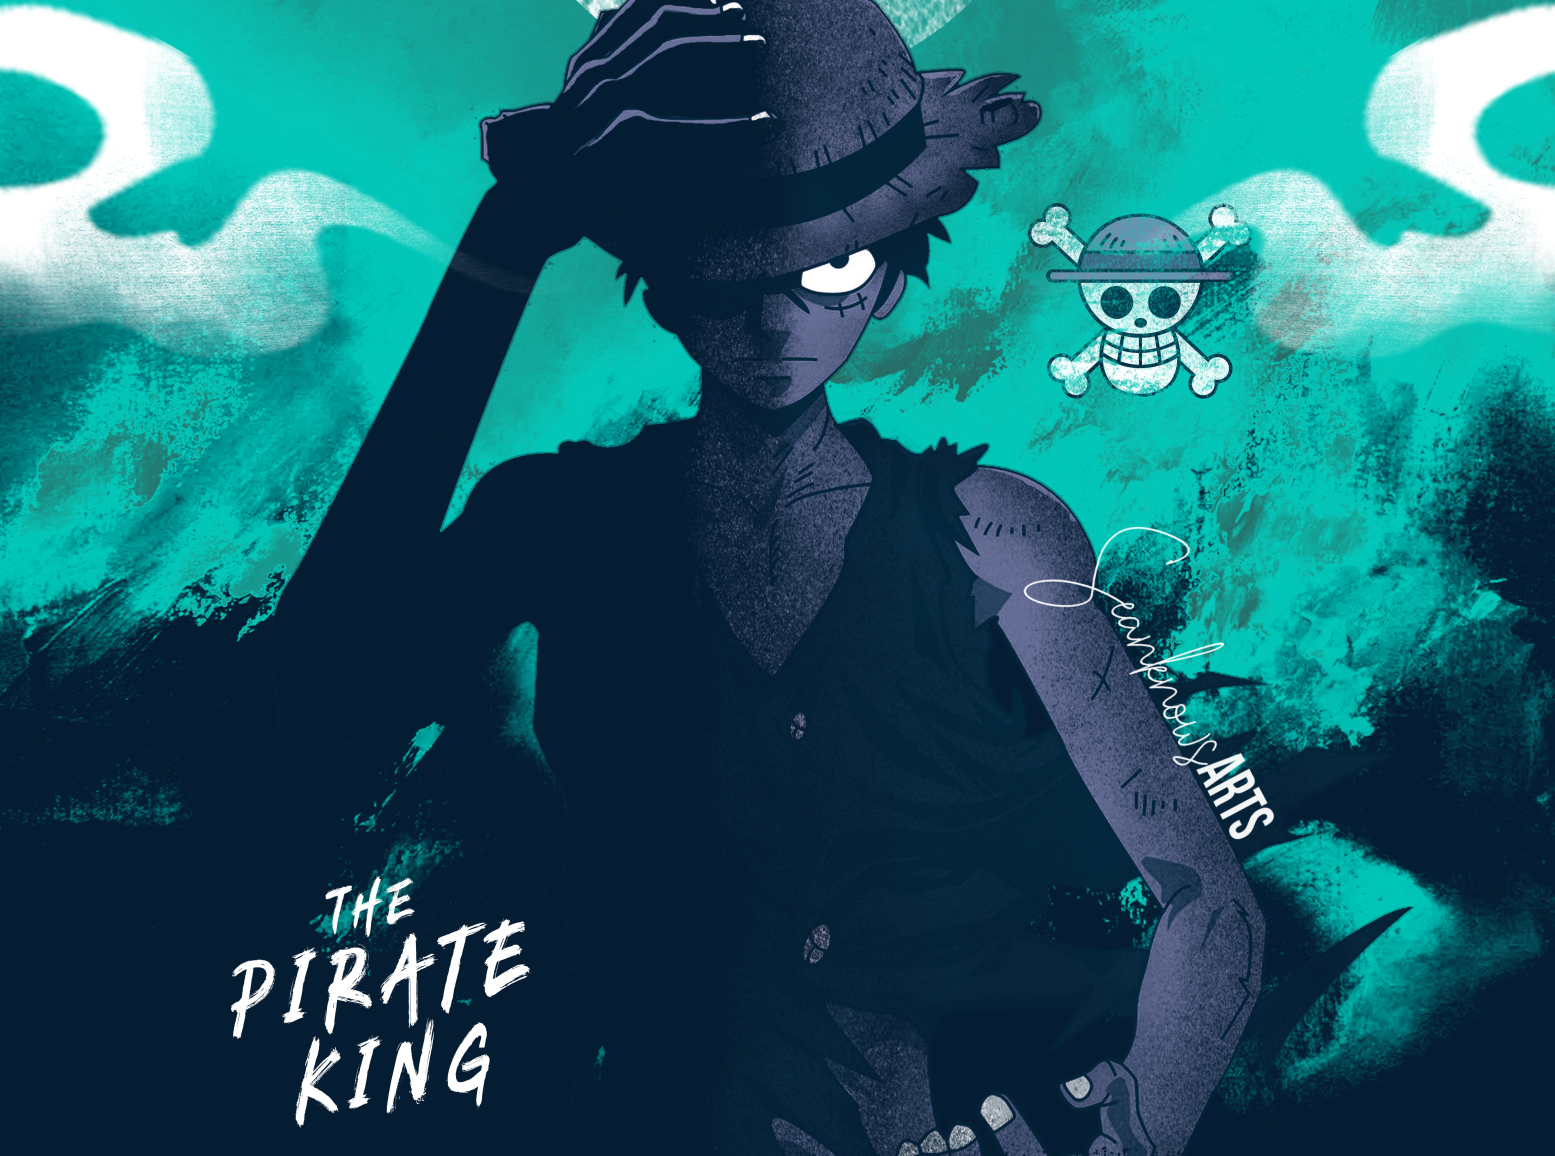 Pirate King One Piece là danh hiệu cao quý nhất trong thế giới One Piece. Chiến đấu dũng mãnh và thông minh, Luffy đã đạt được danh hiệu này. Hãy xem ảnh liên quan để chiêm ngưỡng danh hiệu ấn tượng của vị vua hải tặc này.